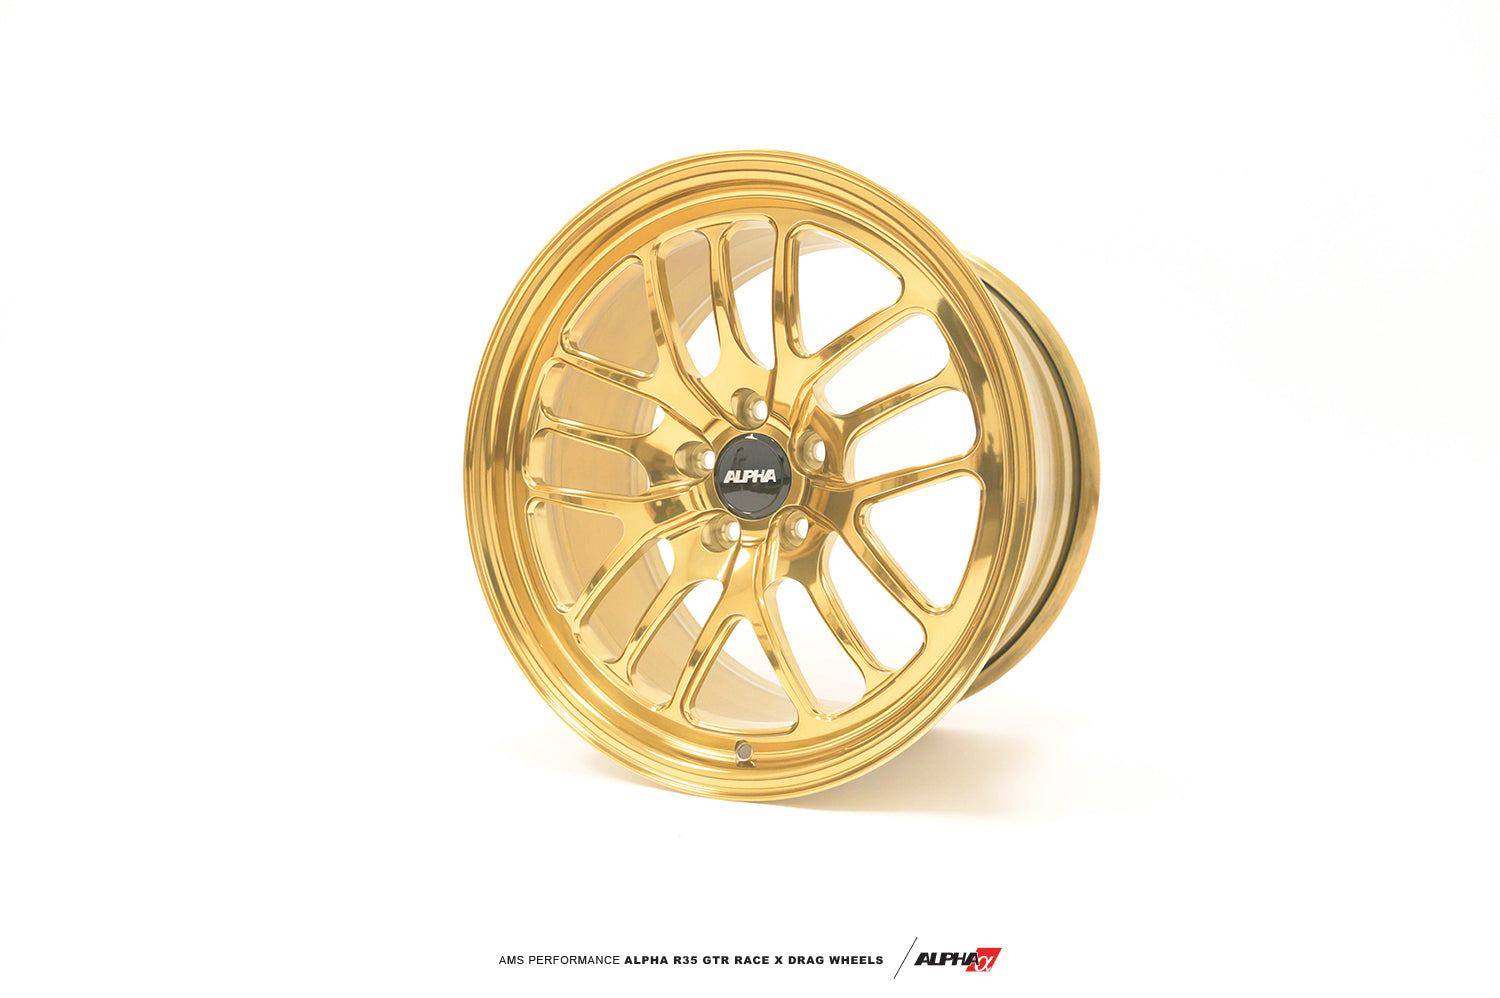 AMS ALP.07.11.0202-4 Race X 18X11" 2-Piece Rear Wheels w / MH Drag Radial Tires NISSAN R35 GT-R (pair) Photo-0 